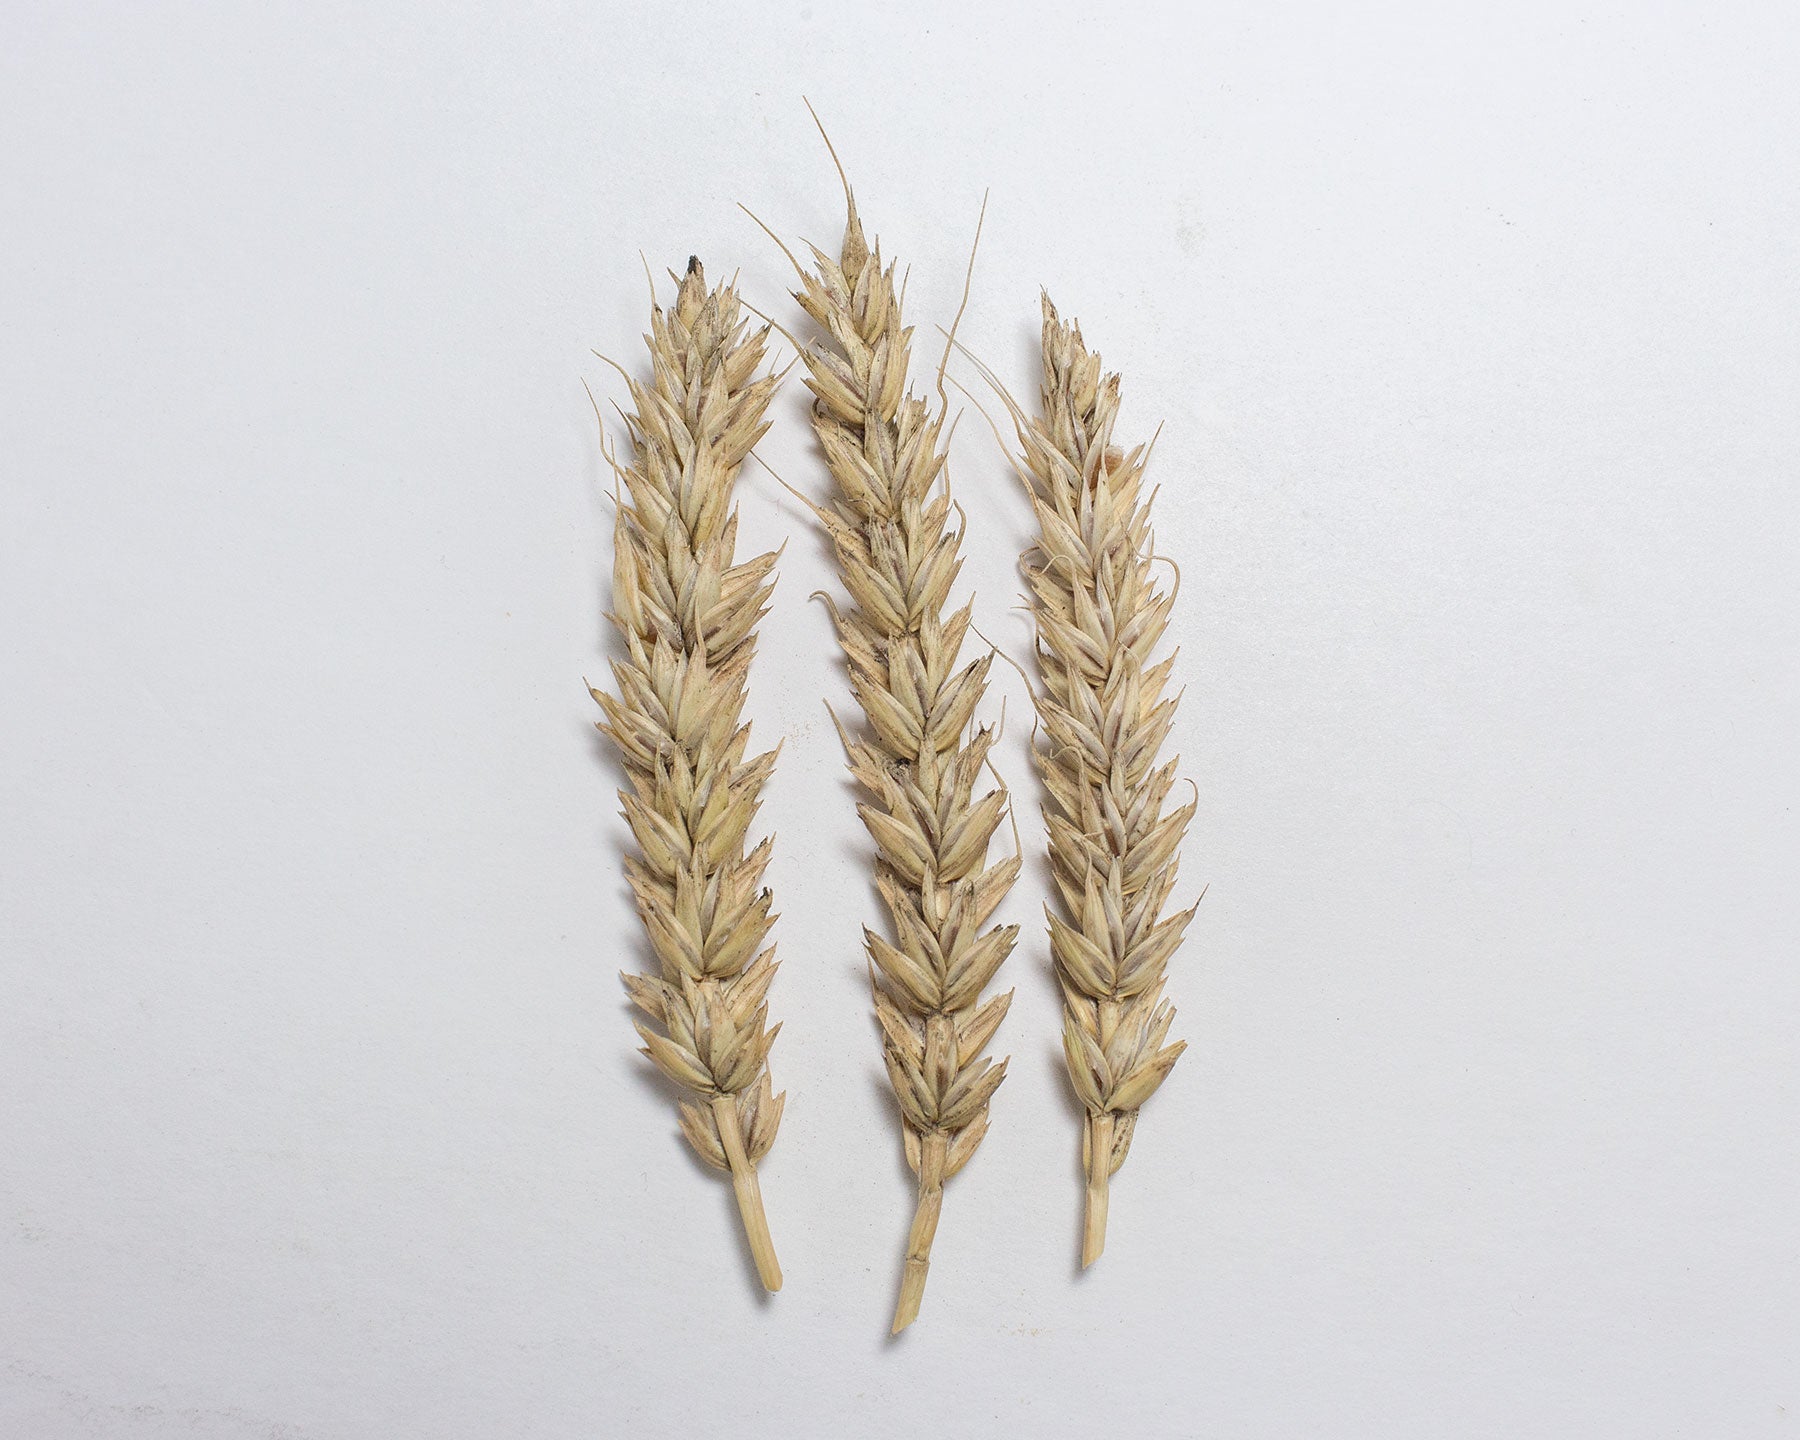 Wheat (Bread) - Garnet